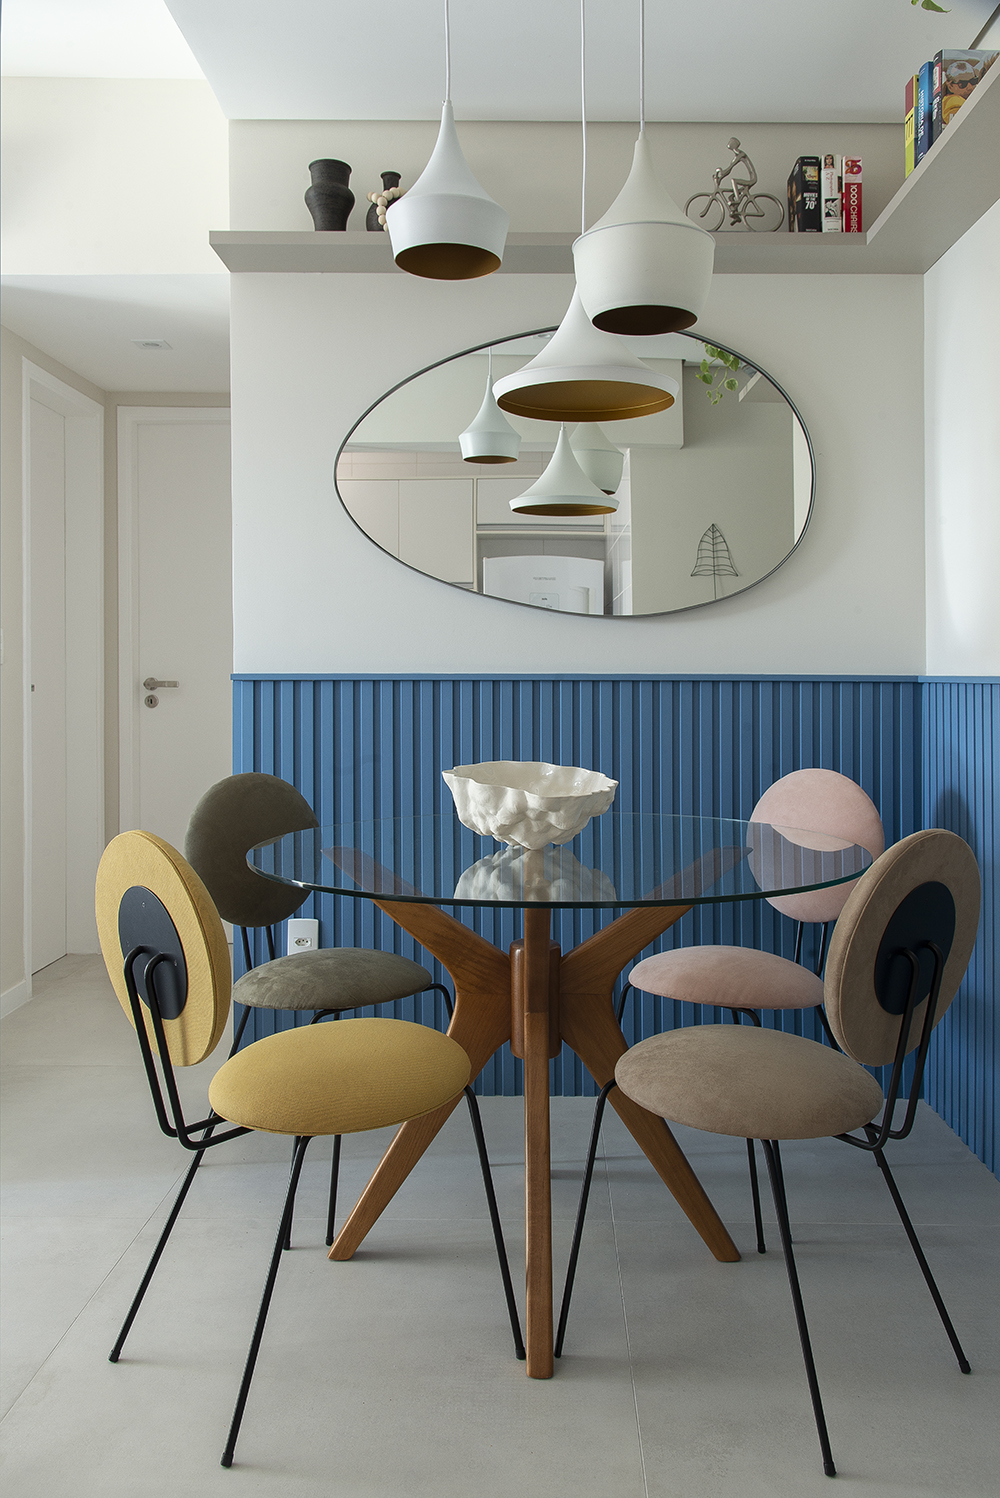 Sala de jantar; sala de jantar pequena; meia parede; revestimento; azul; lambri; espelho